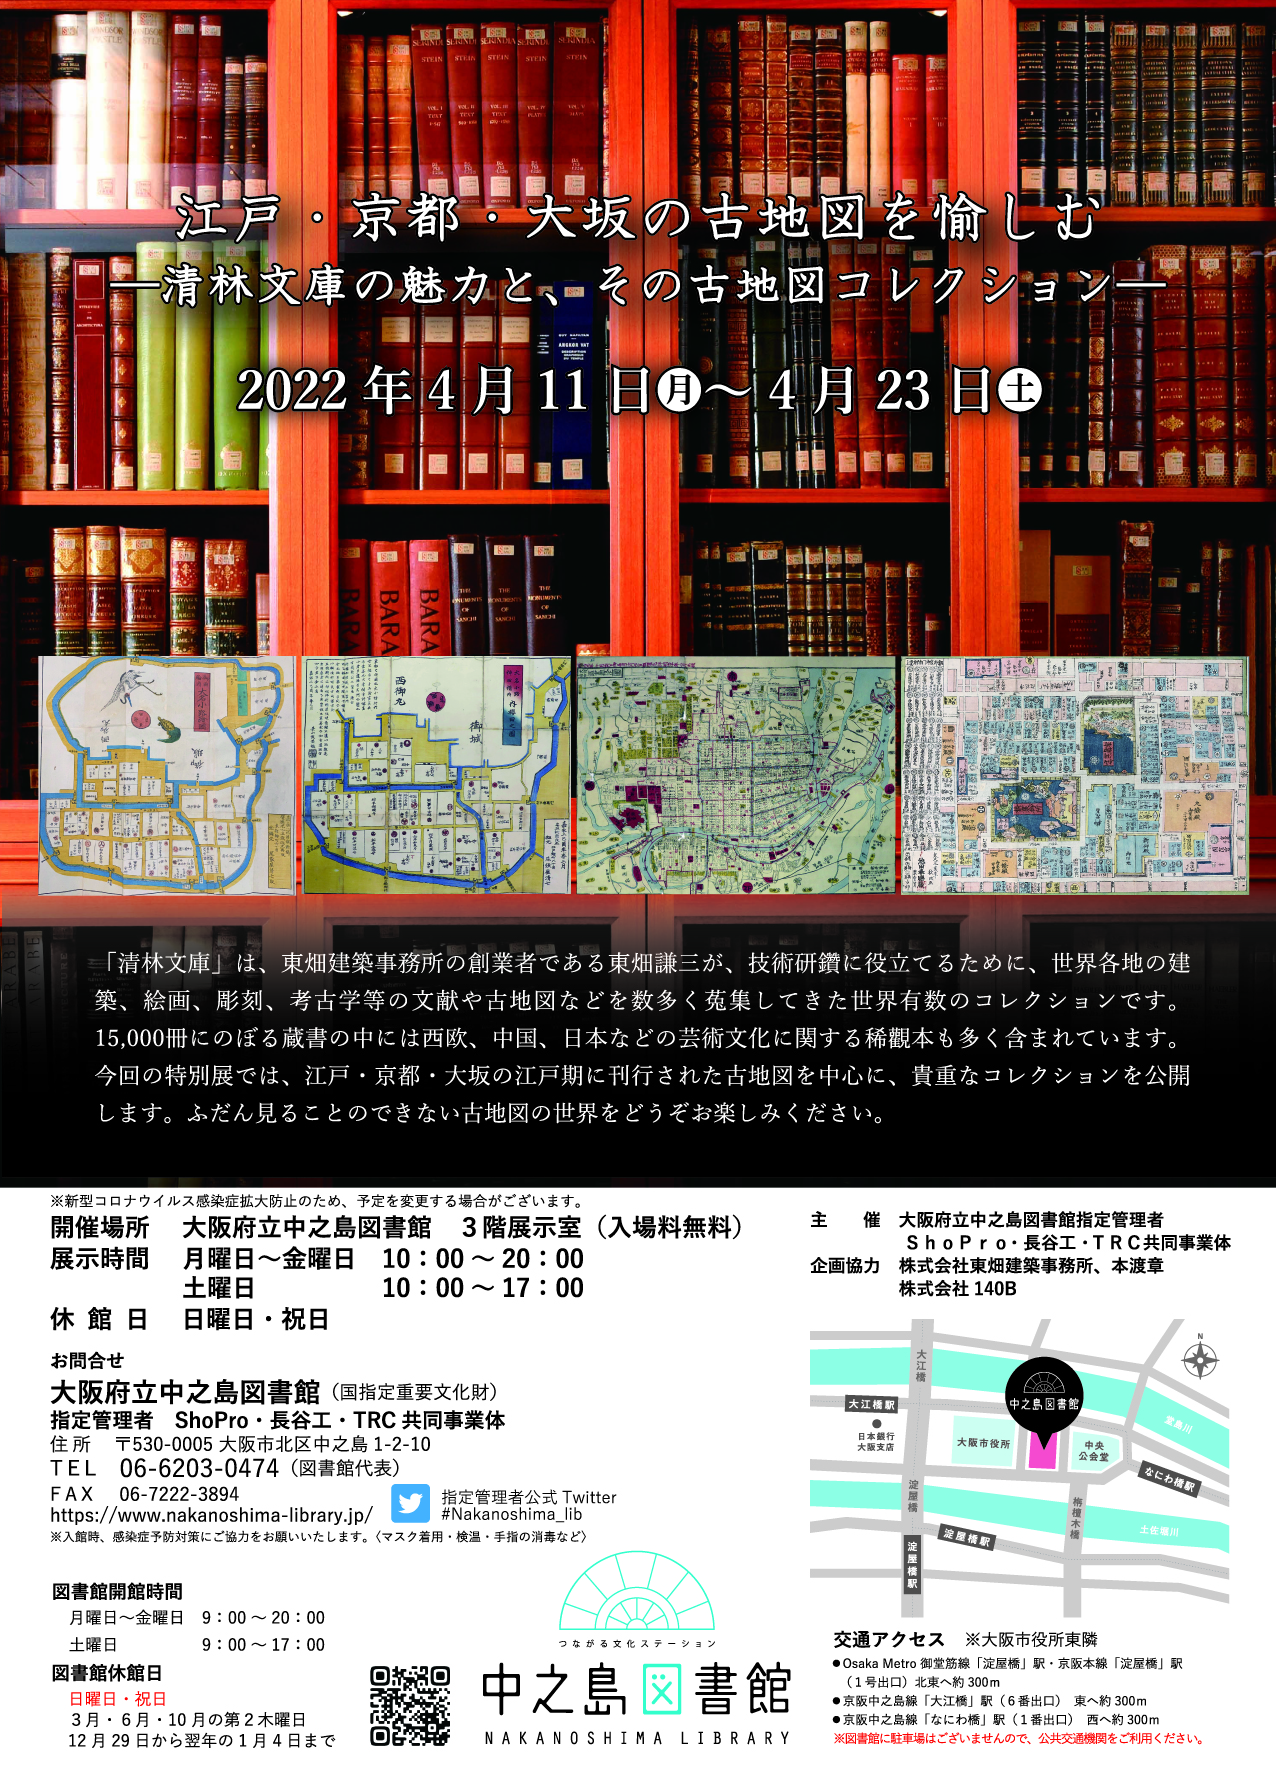 江戸・京都・大坂の古地図を愉しむ―清林文庫の魅力と、その古地図コレクション―